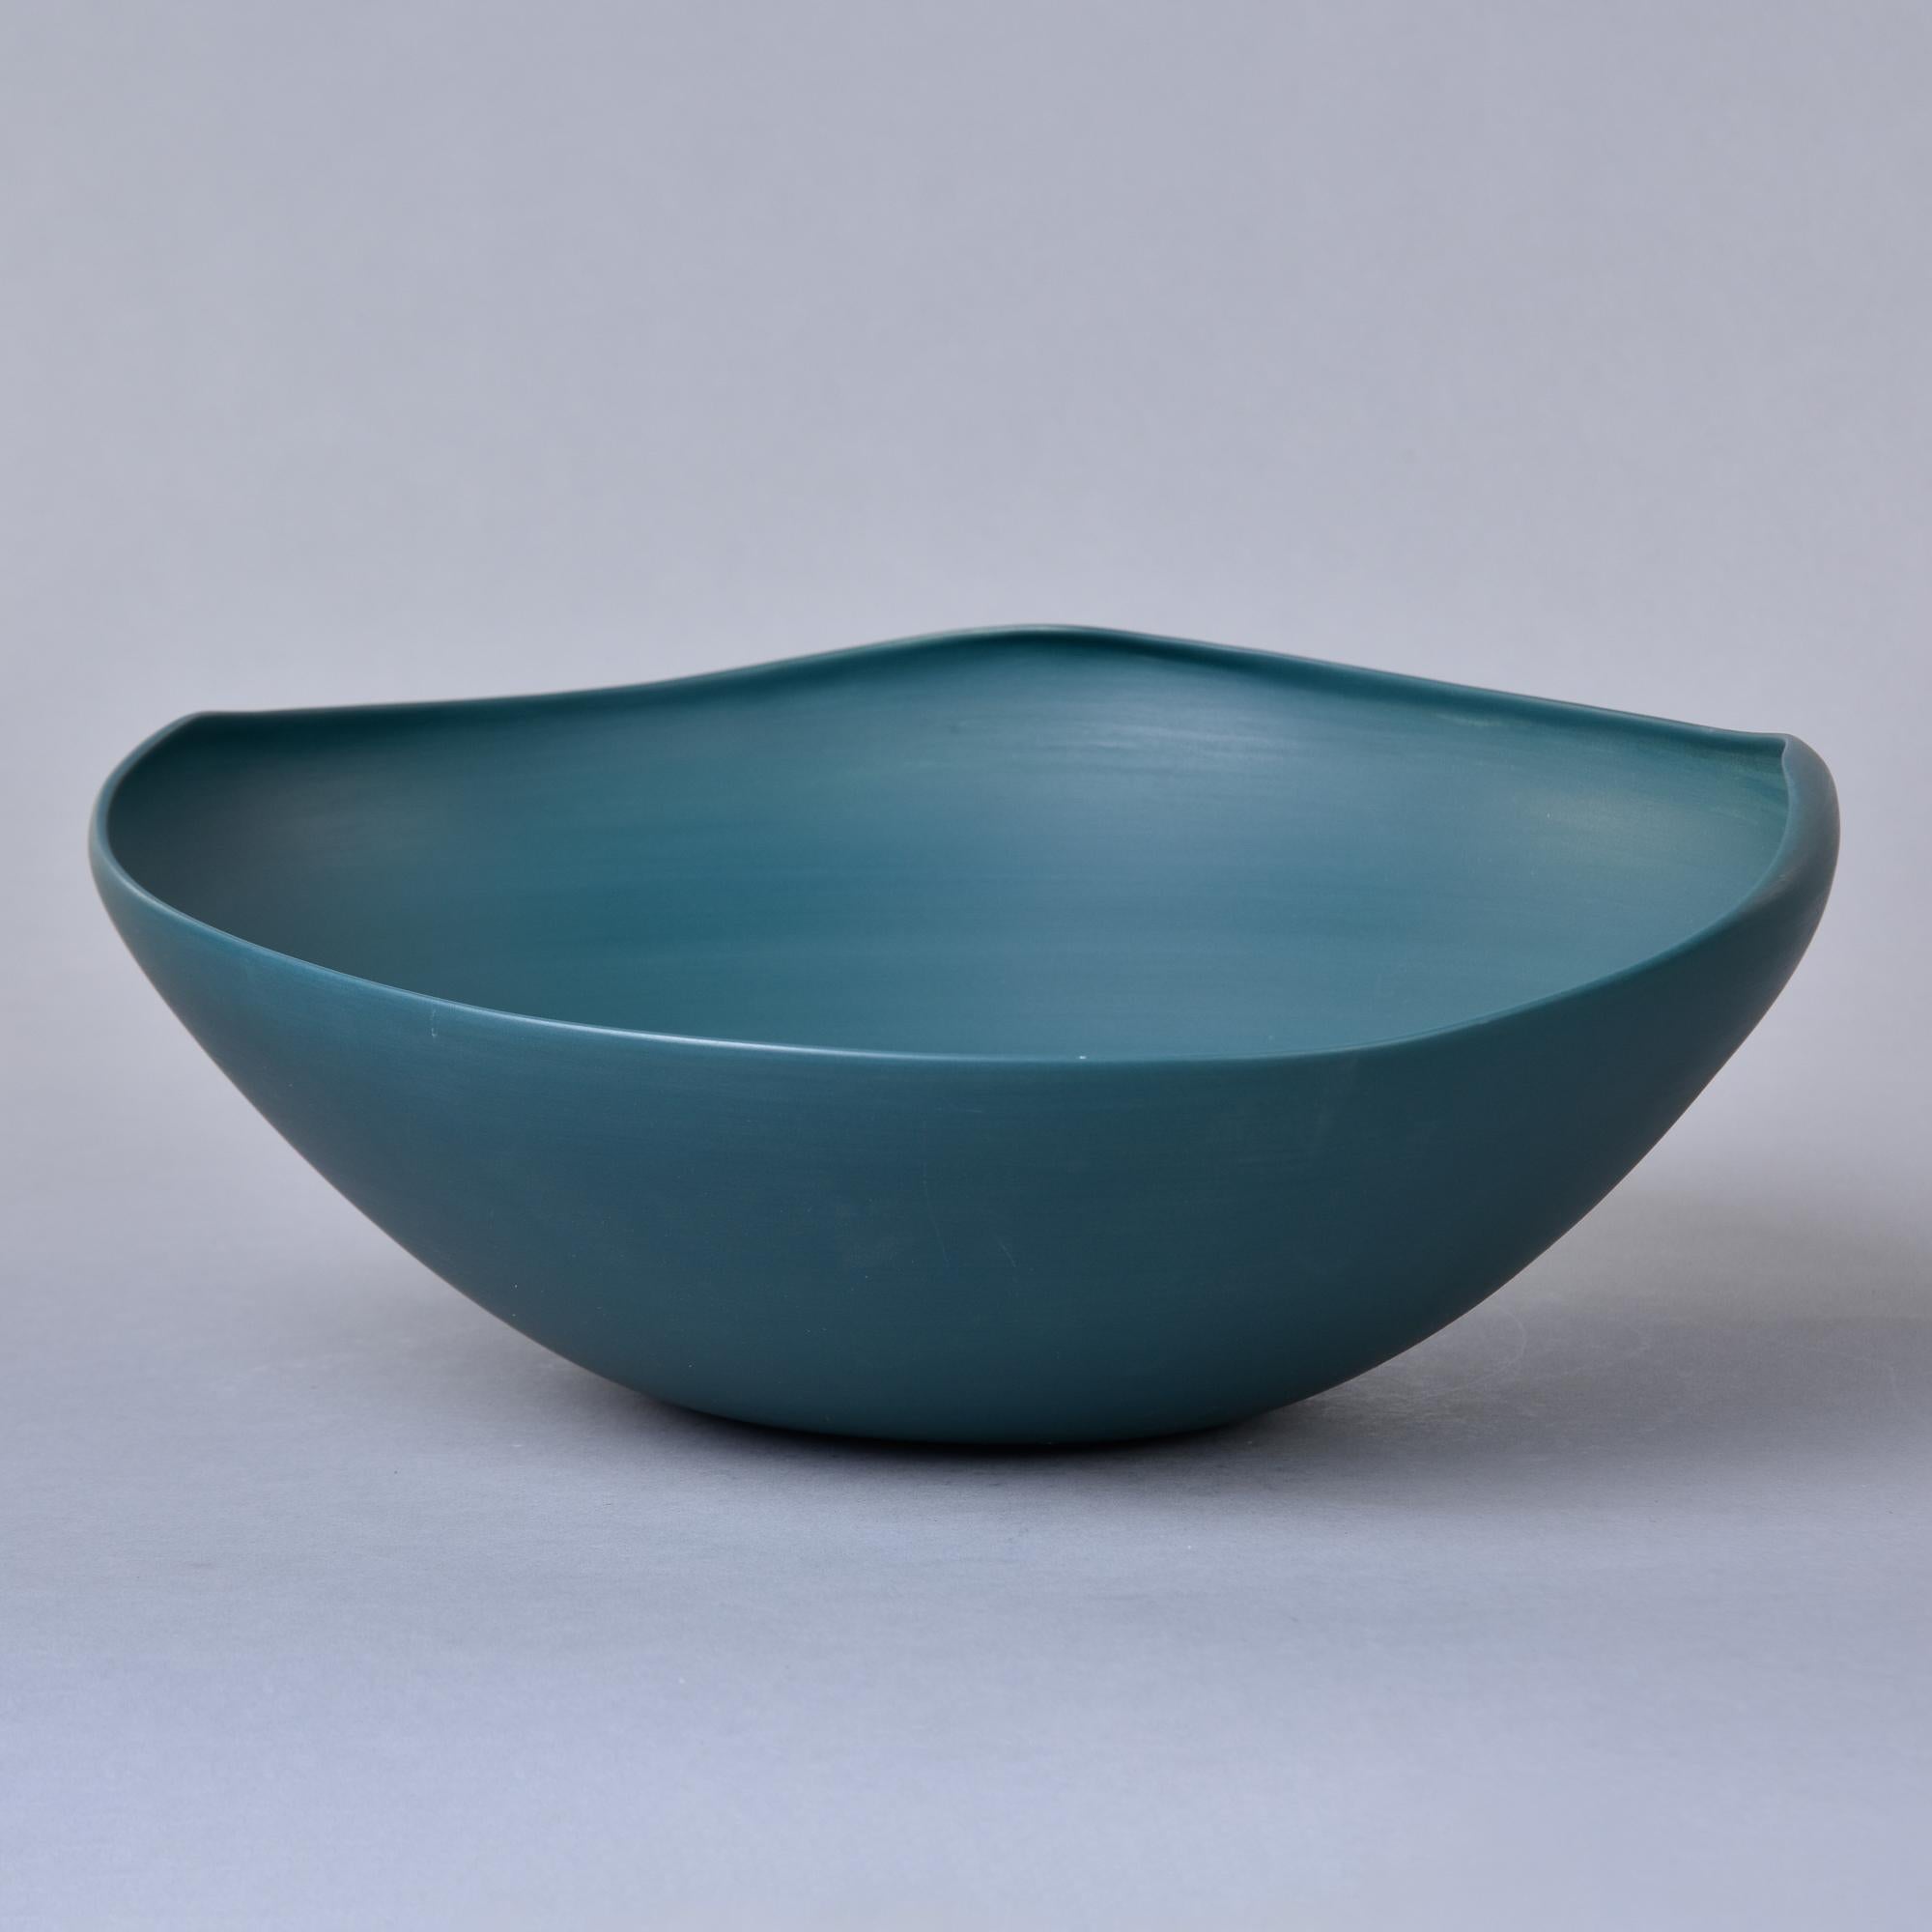 Nouveau et importé d'Italie, ce bol en poterie d'art de Rina Menardi est un bol en céramique à parois minces avec un bord irrégulier et une glaçure saturée vert sarcelle. Le dessous de la base porte la marque du fabricant. Nouveau, sans aucun